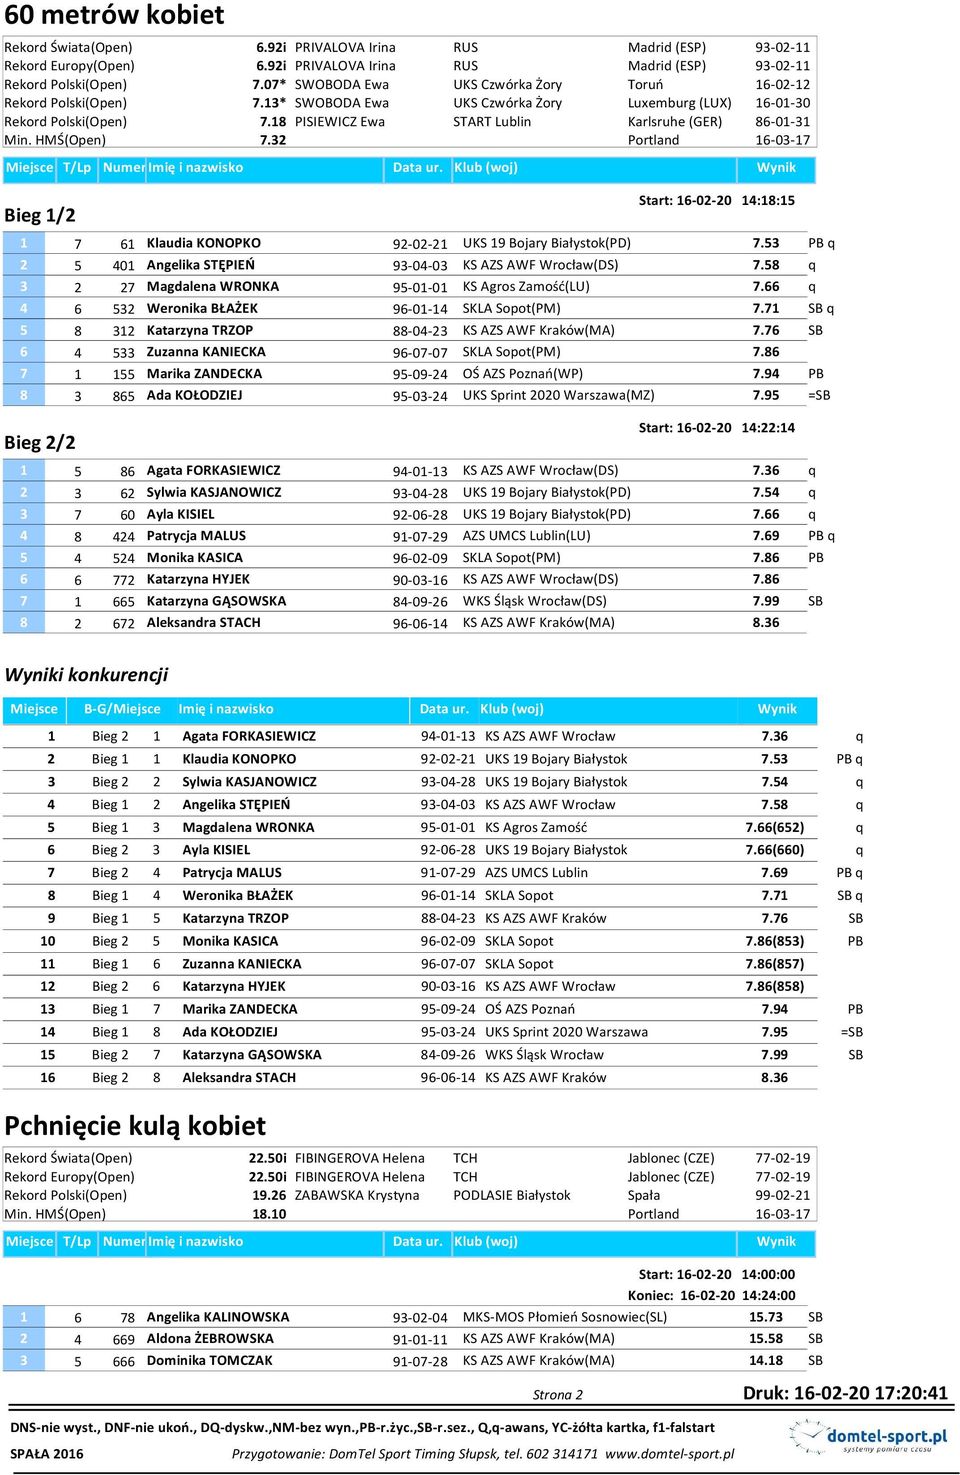 18 PISIEWICZ Ewa START Lublin Karlsruhe (GER) 86-01-31 Min. HMŚ(Open) 7.32 Bieg 1/2 Start: 16-02-20 14:18:15 1 7 61 Klaudia KONOPKO 92-02-21 UKS 19 Bojary Białystok(PD) 7.